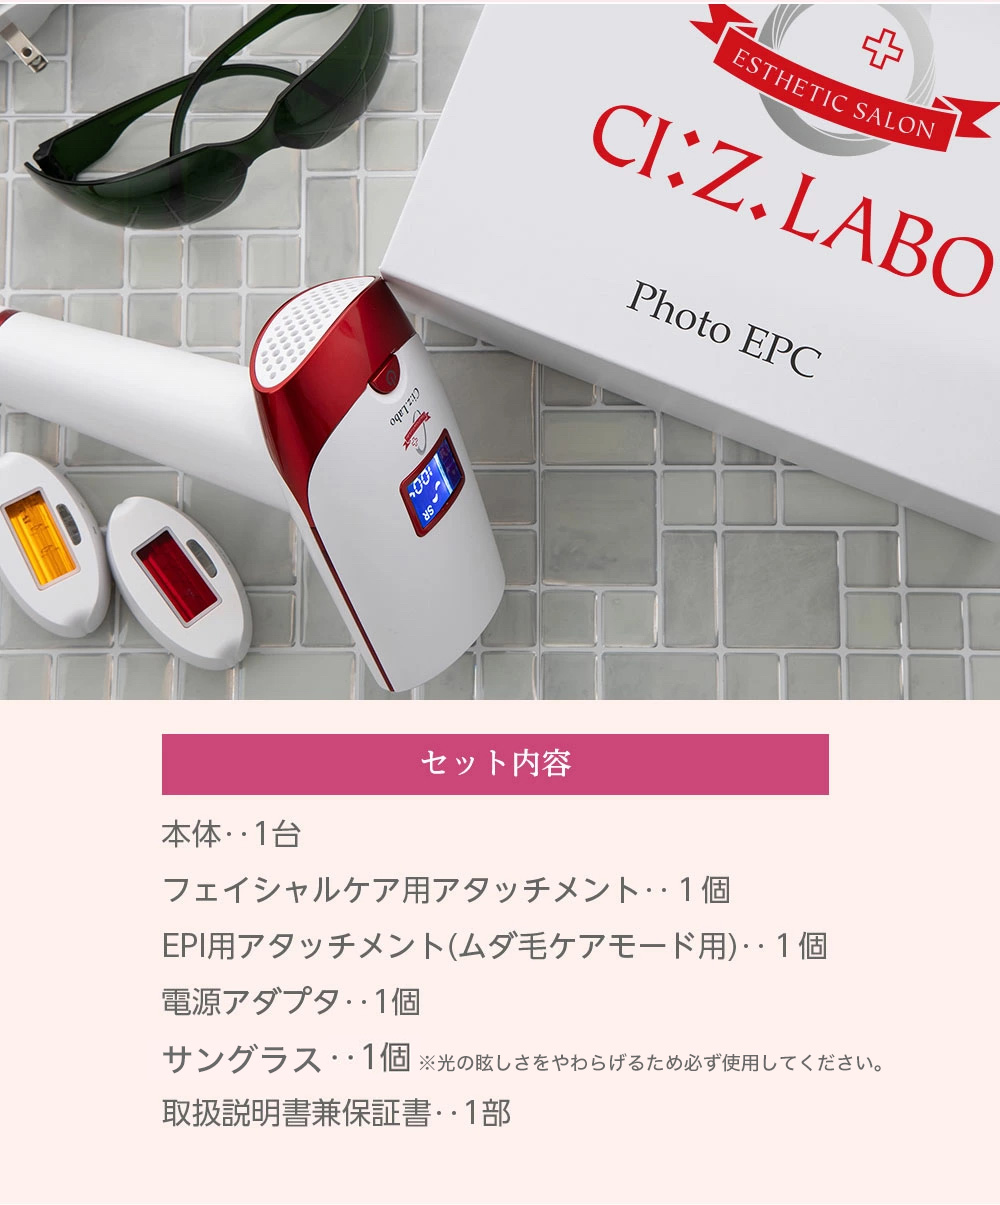 Ci:Z.Labo T009I シーズラボ 美顔器&脱毛器 フォト EPC